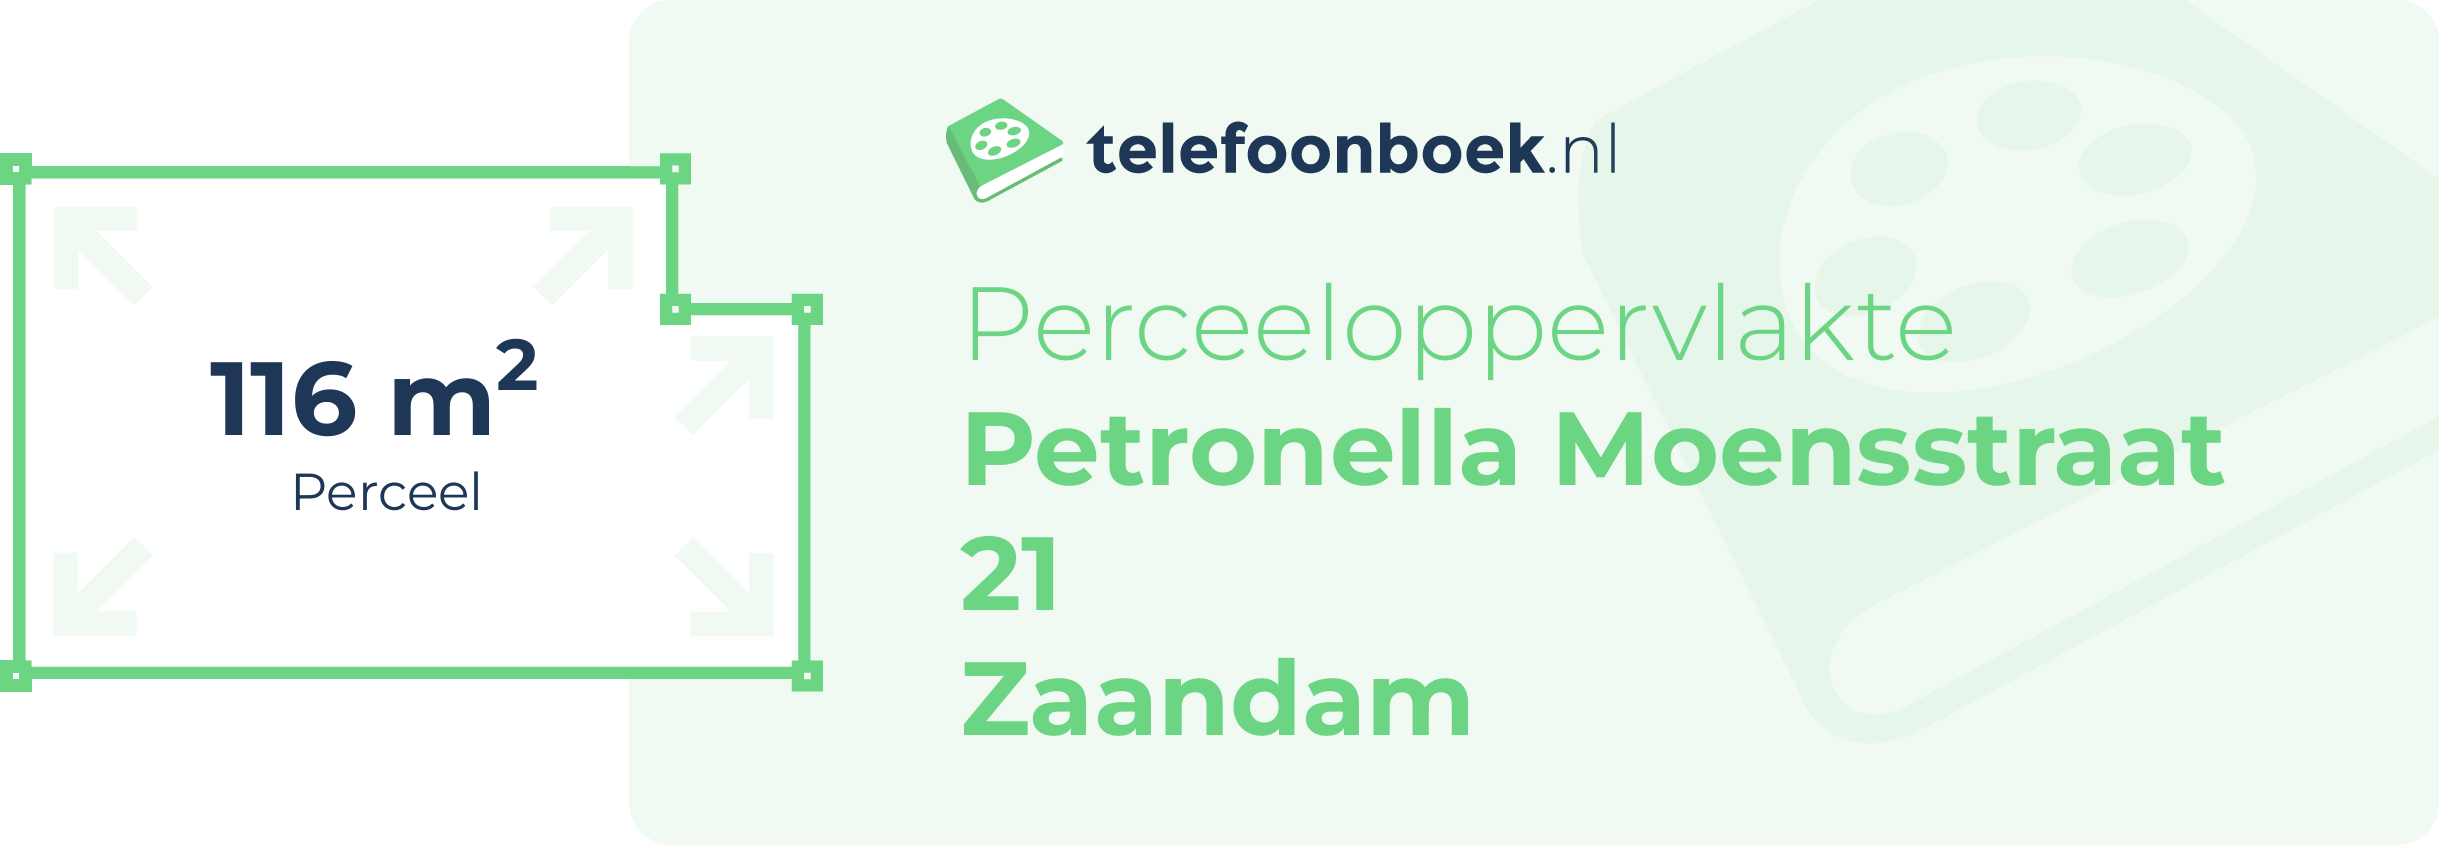 Perceeloppervlakte Petronella Moensstraat 21 Zaandam